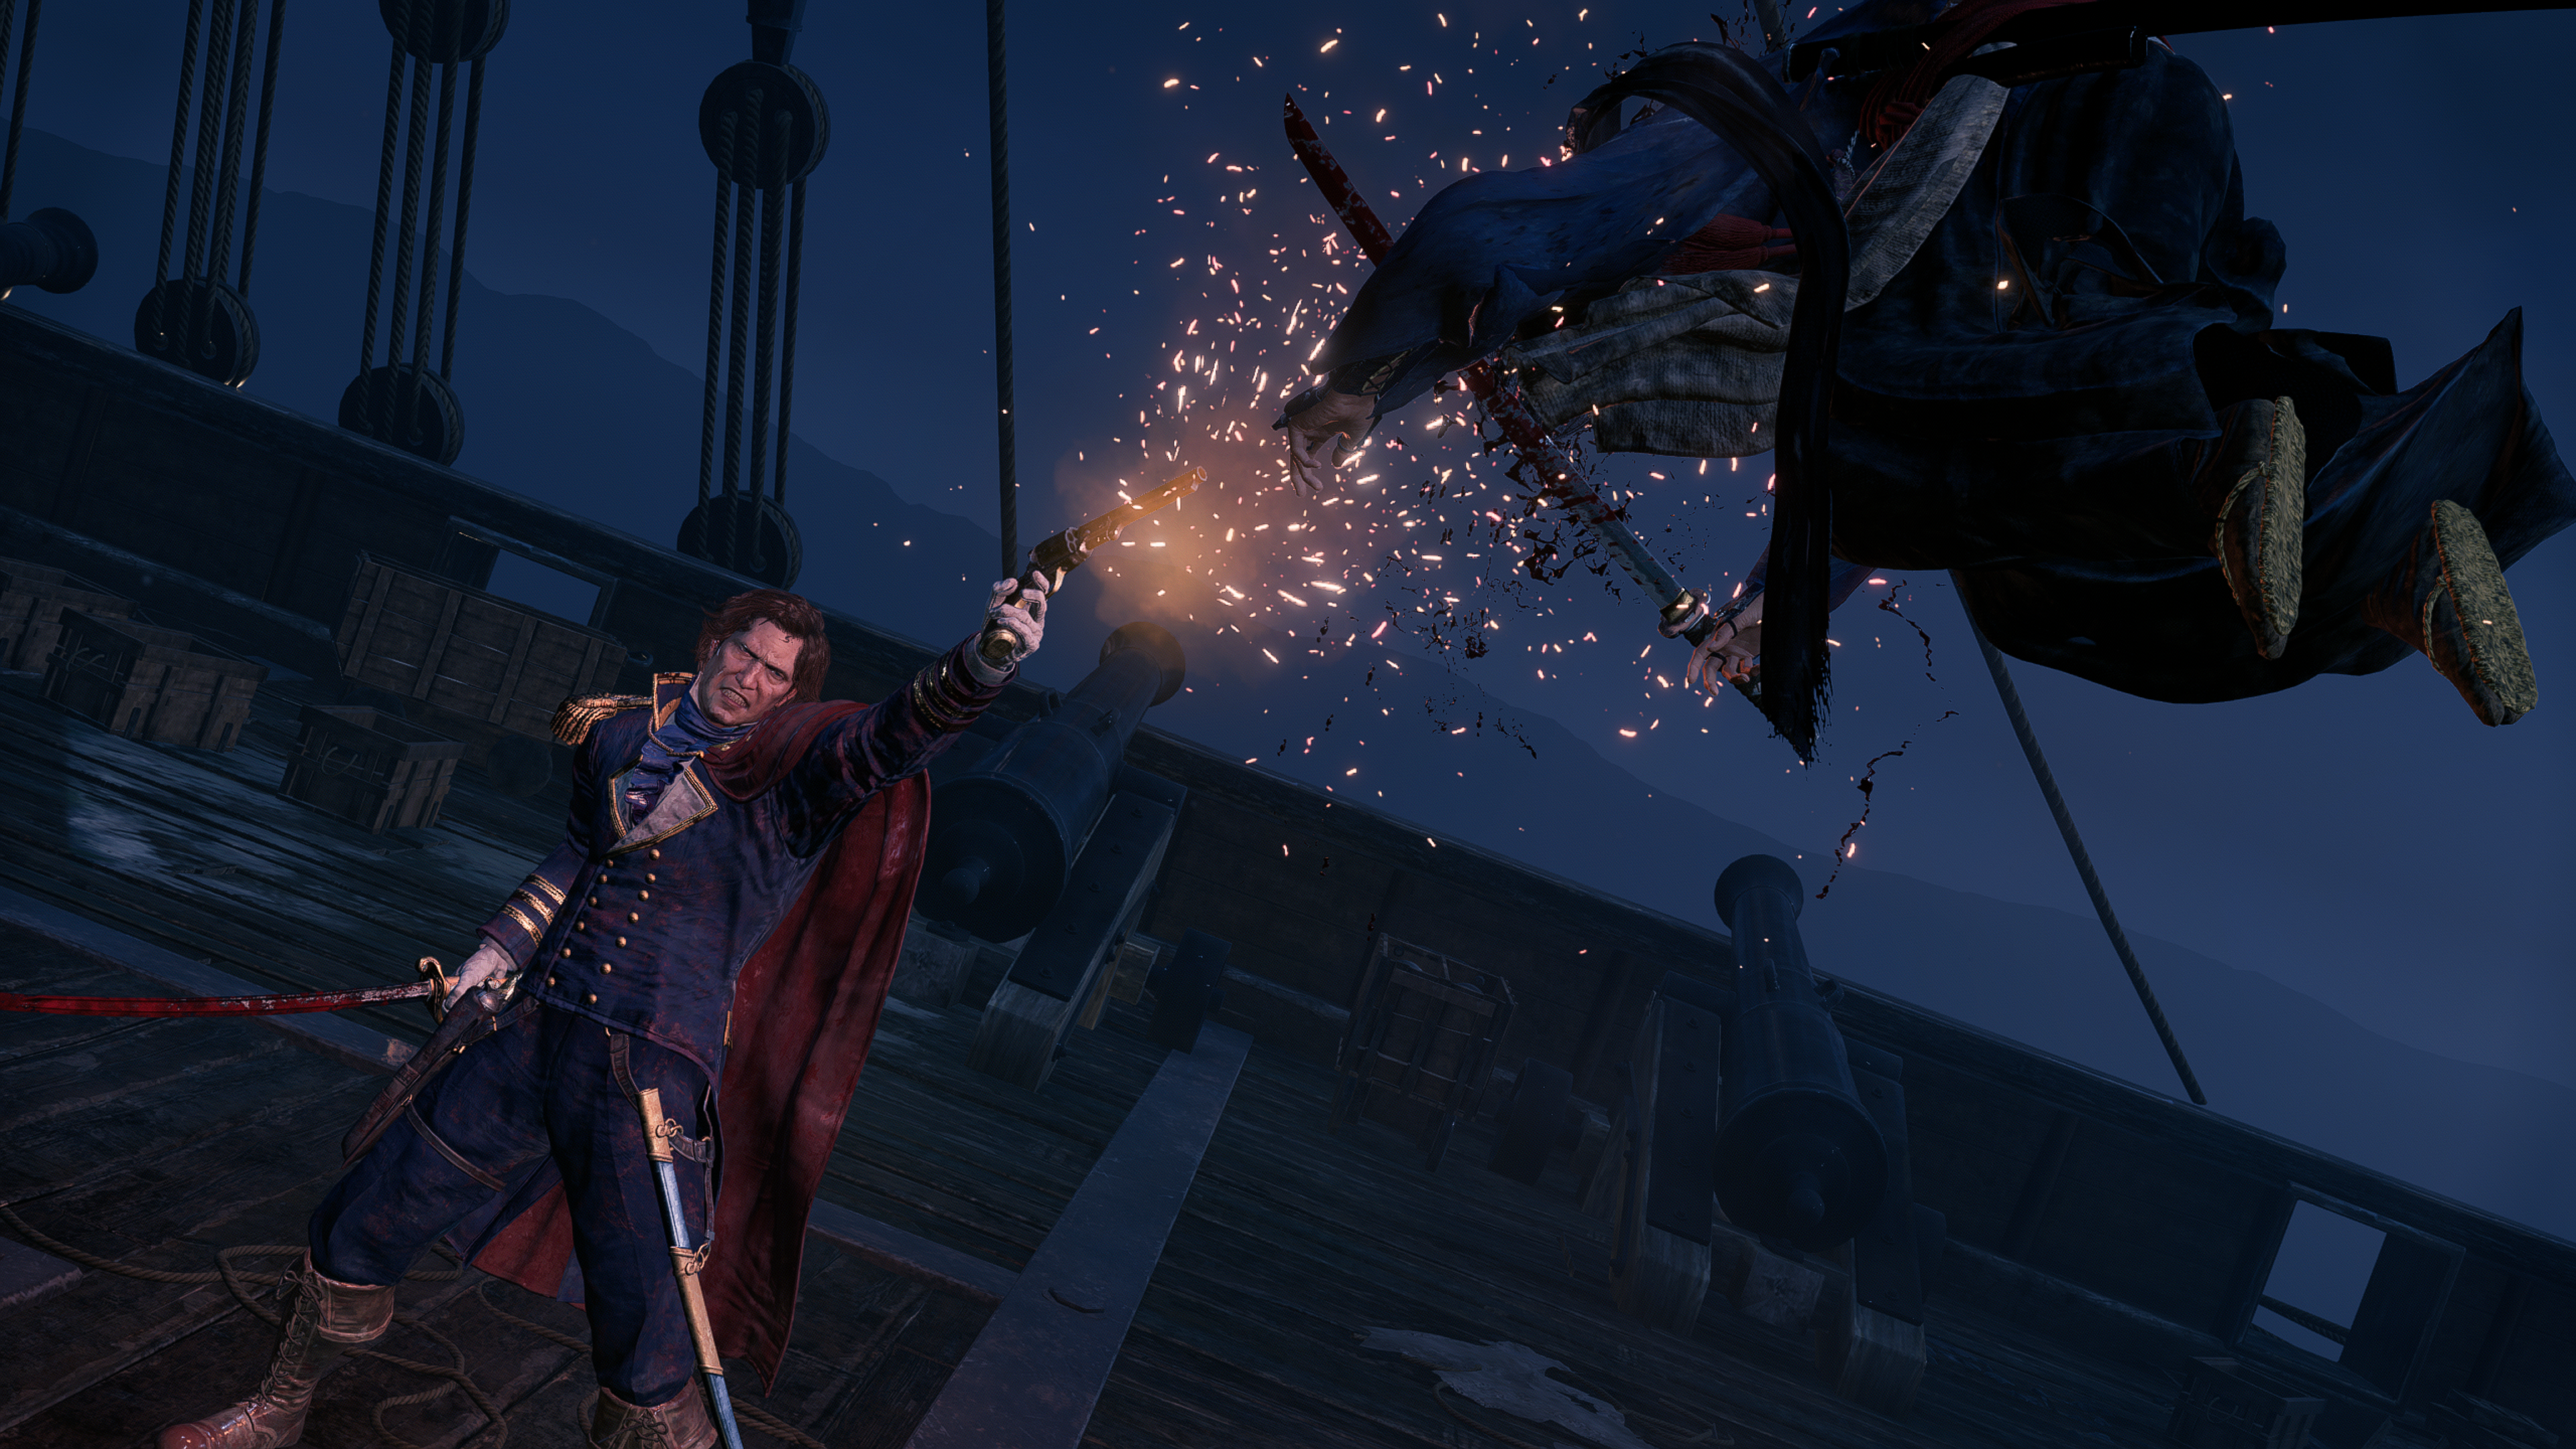 Capture d'écran officielle de Rise of the Ronin montrant un joueur abattant un ennemi en vol avec un pistolet à bord d'un navire